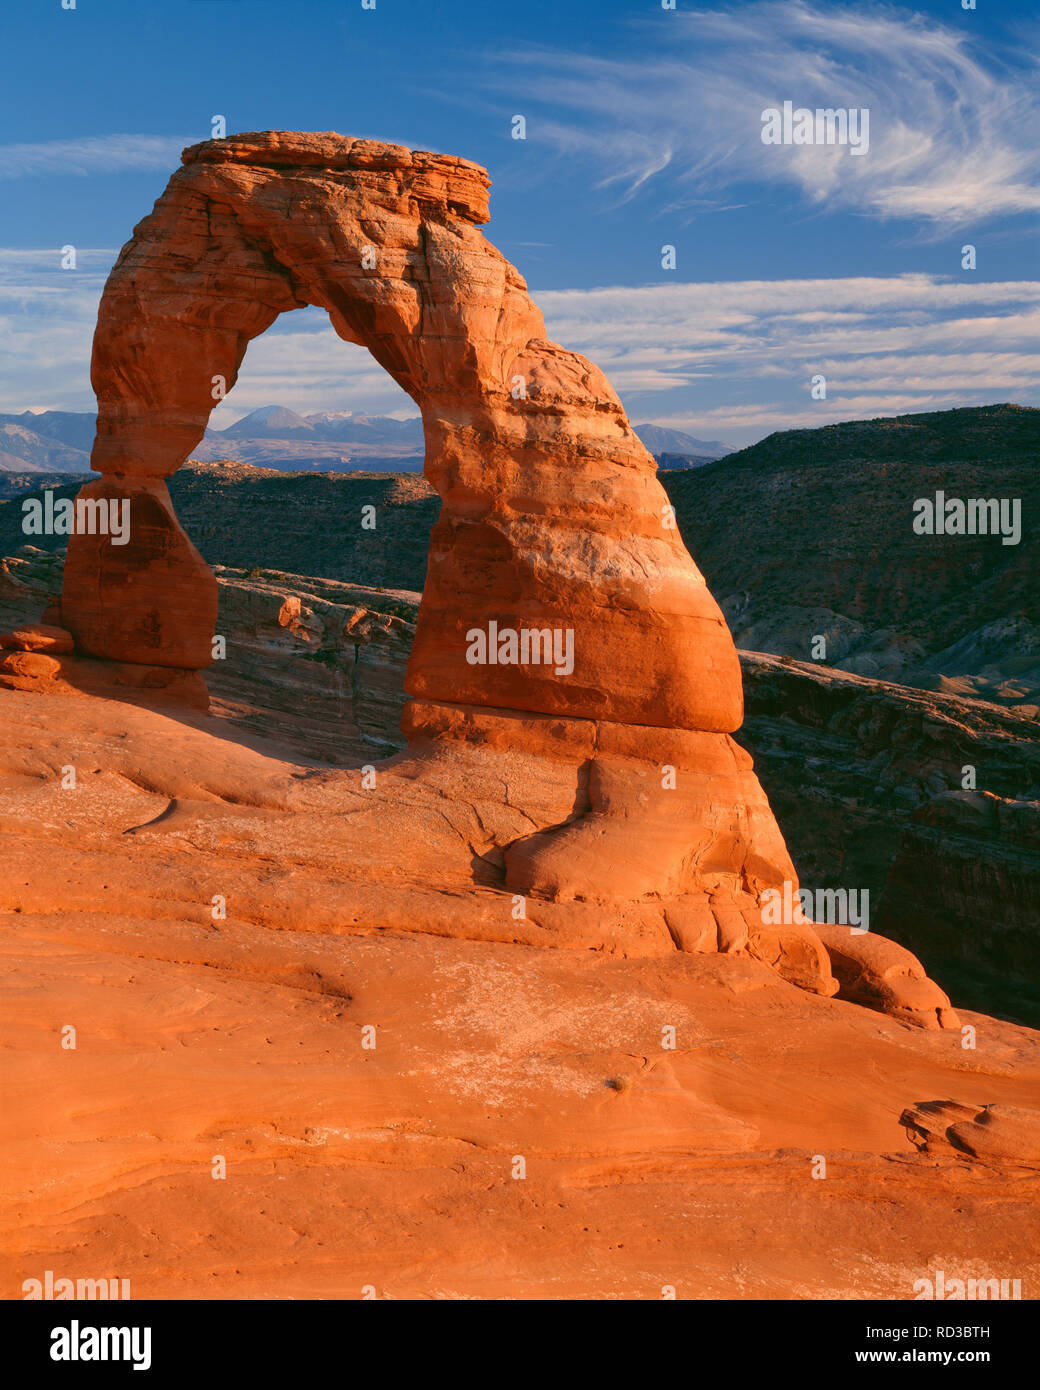 Stati Uniti d'America, Utah, Arches National Park, luce della sera su 45ft tall Delicate Arch, che è composto di Entrada in pietra arenaria, e distante La Sal Mountains. Foto Stock